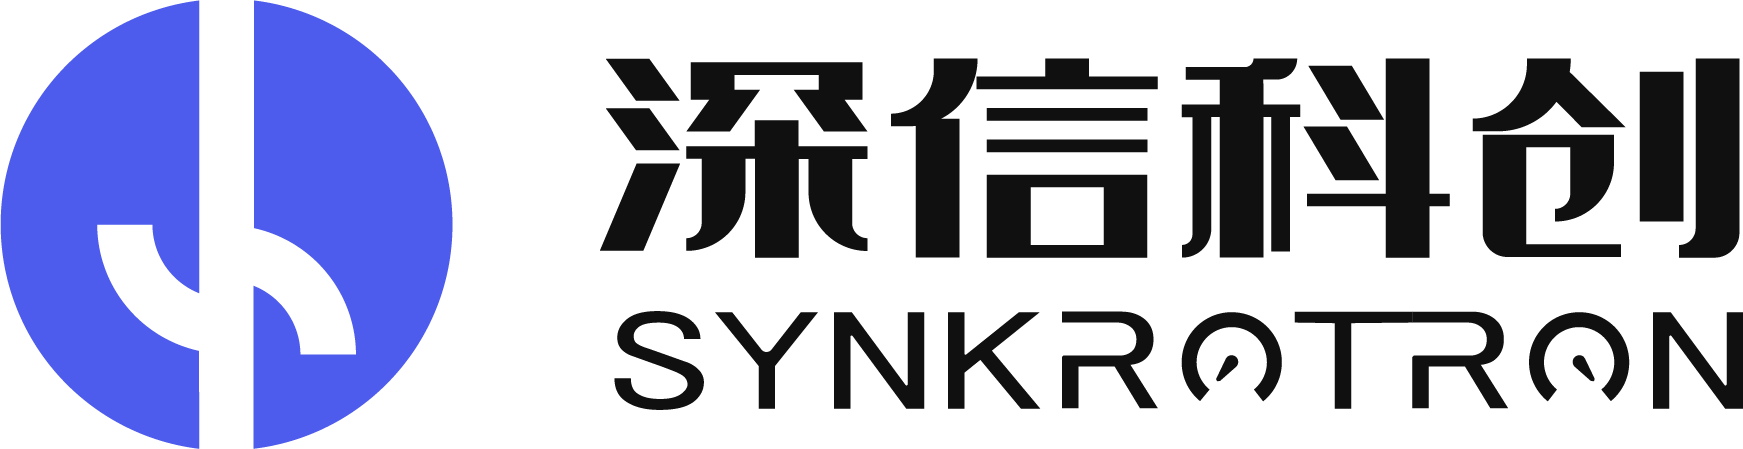 “synkrotron_logo”